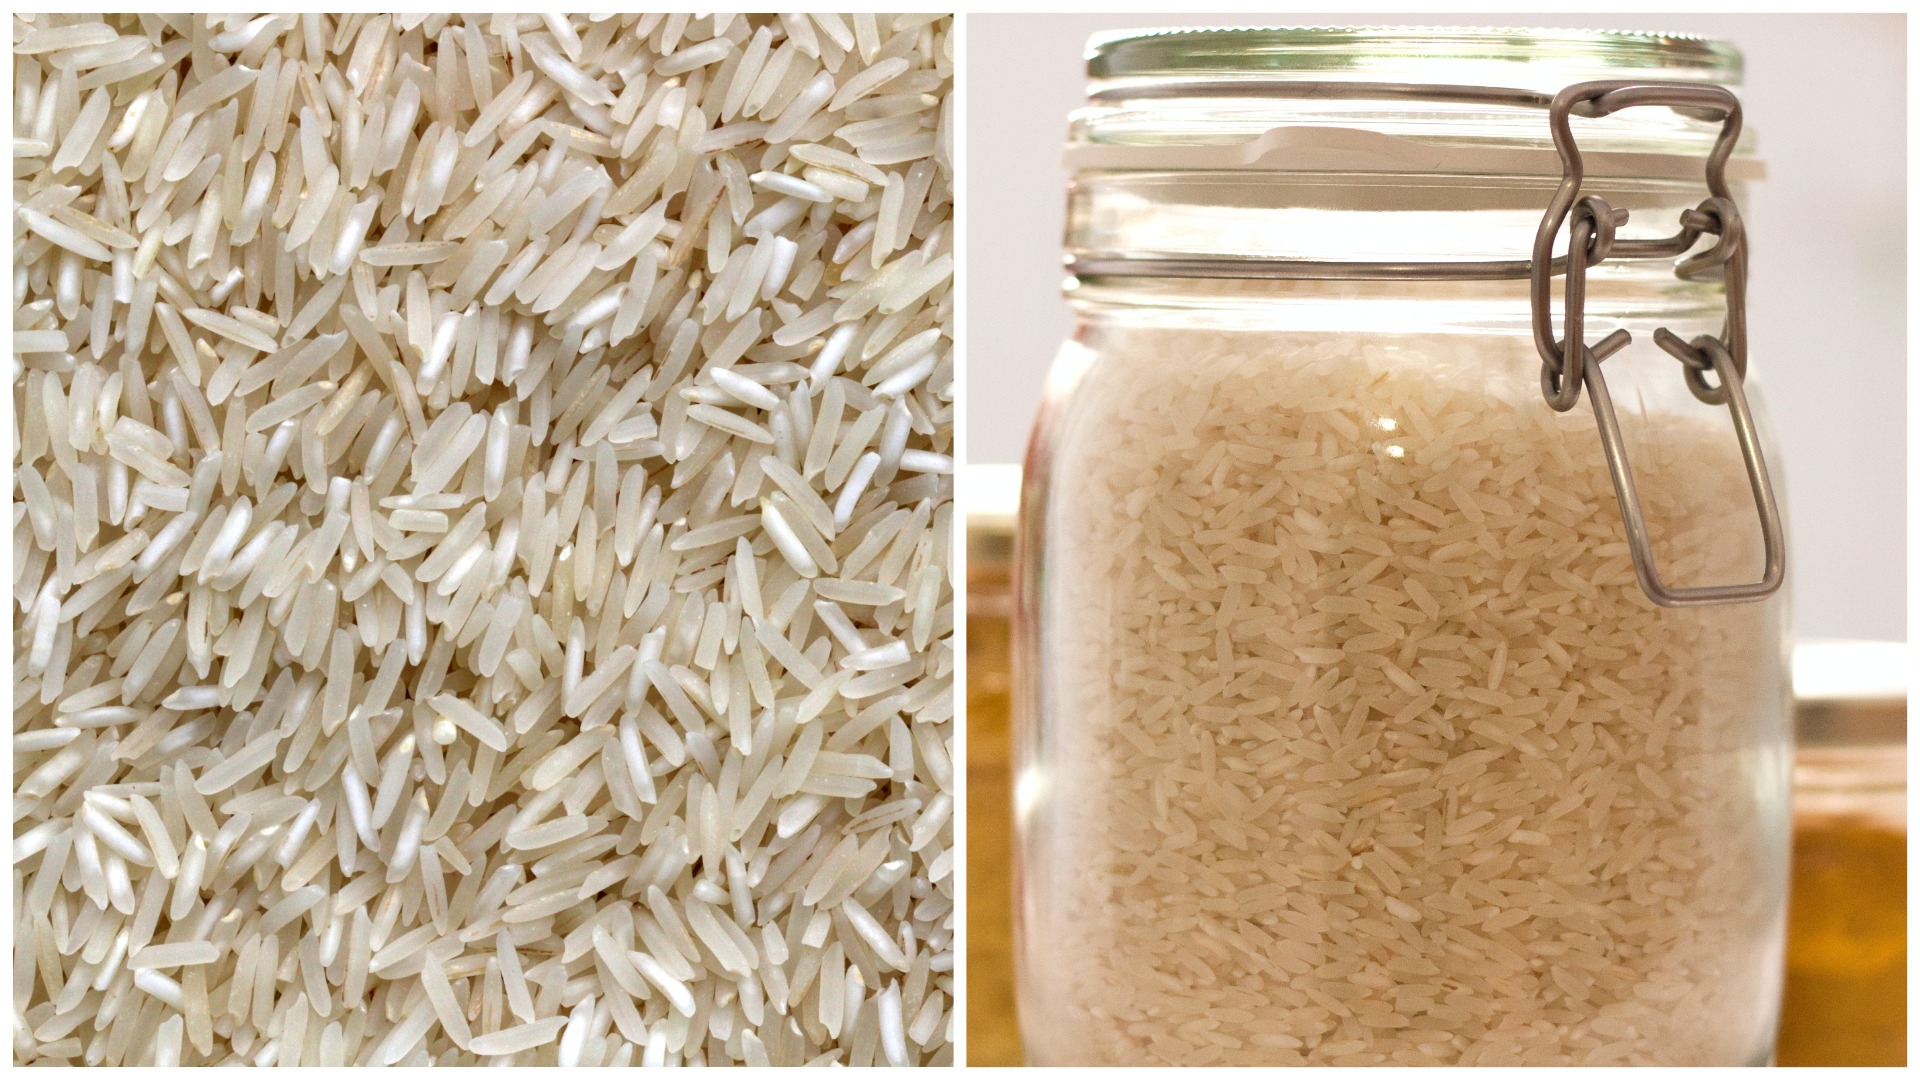 Рис для плова нужно промывать. Рис обычный. Промыть рис. Отношение риса к воде. Как промыть рис.